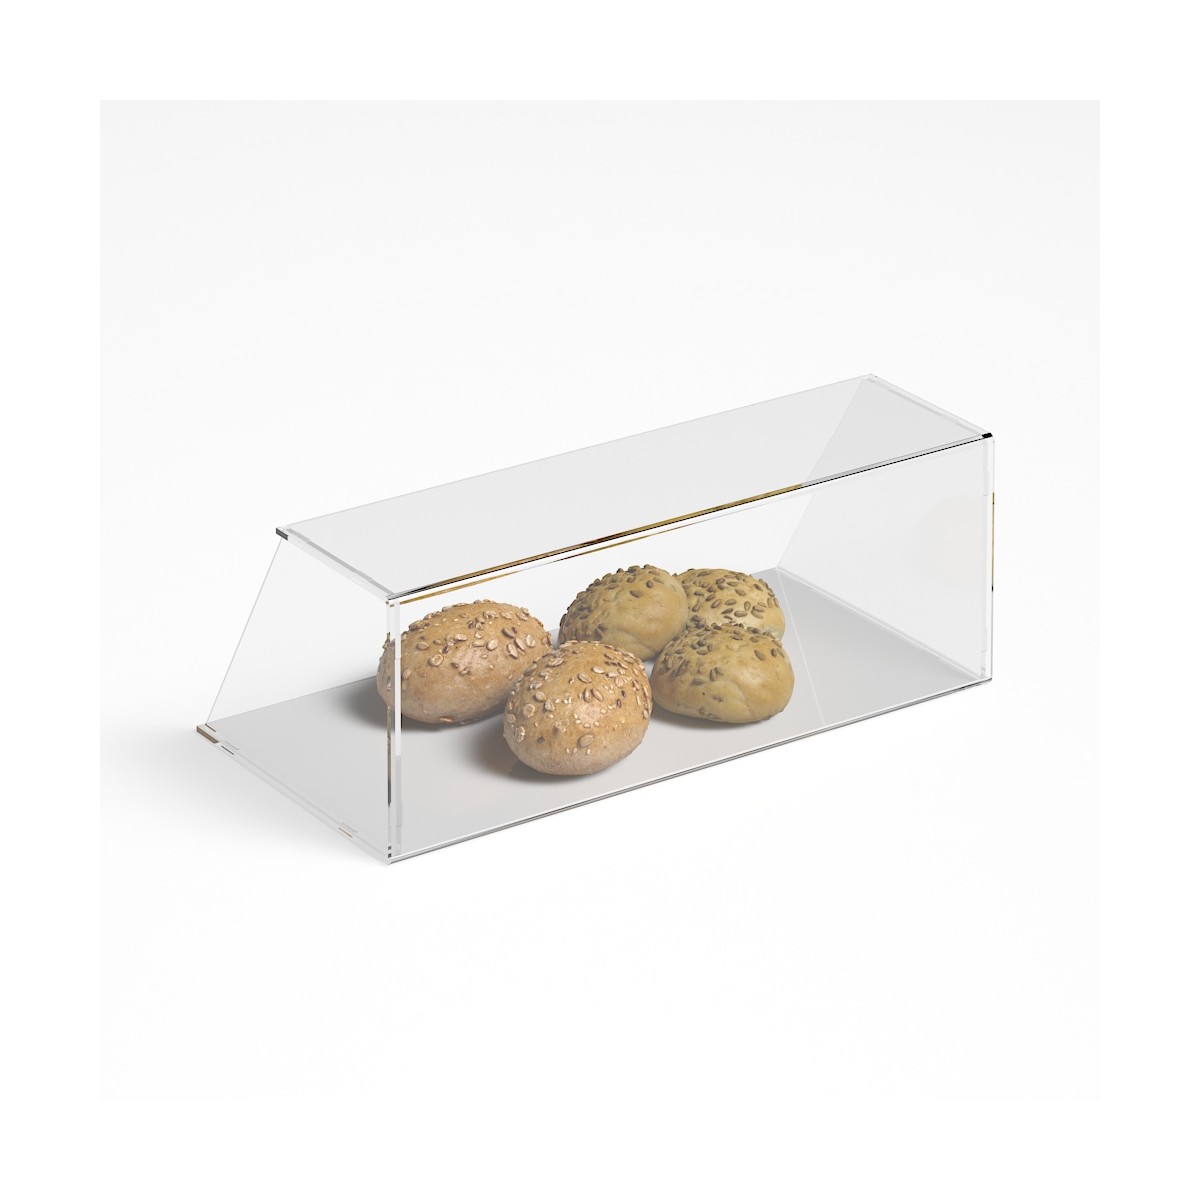 E-1188 PAR-B - Parafiato parasputi in plexiglass trasparente per alimenti con pannelli laterali - Misure: 60x30x H22 cm